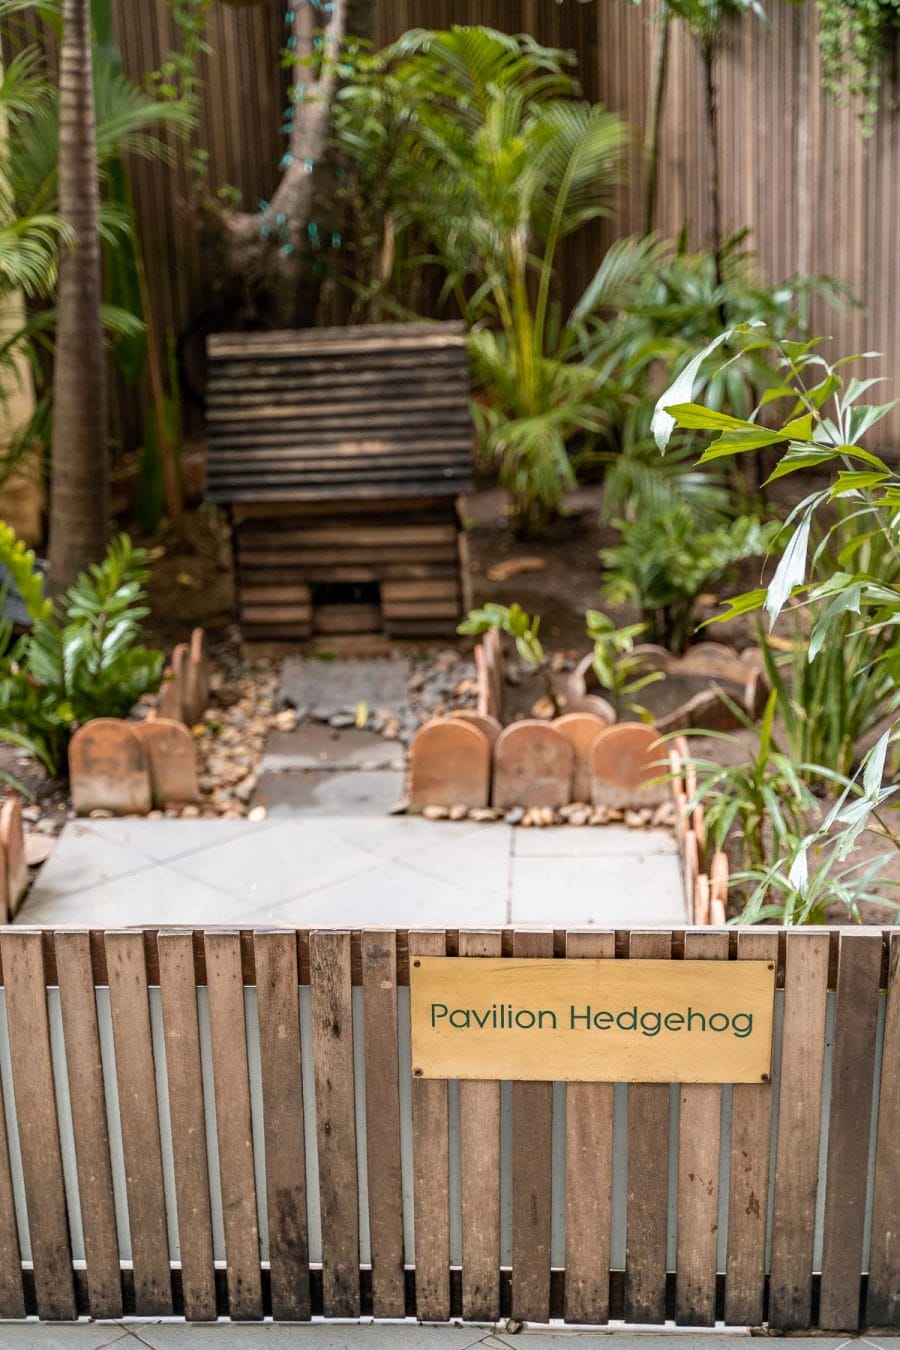 Hedgehog garden at Pavilion Phnom Penh